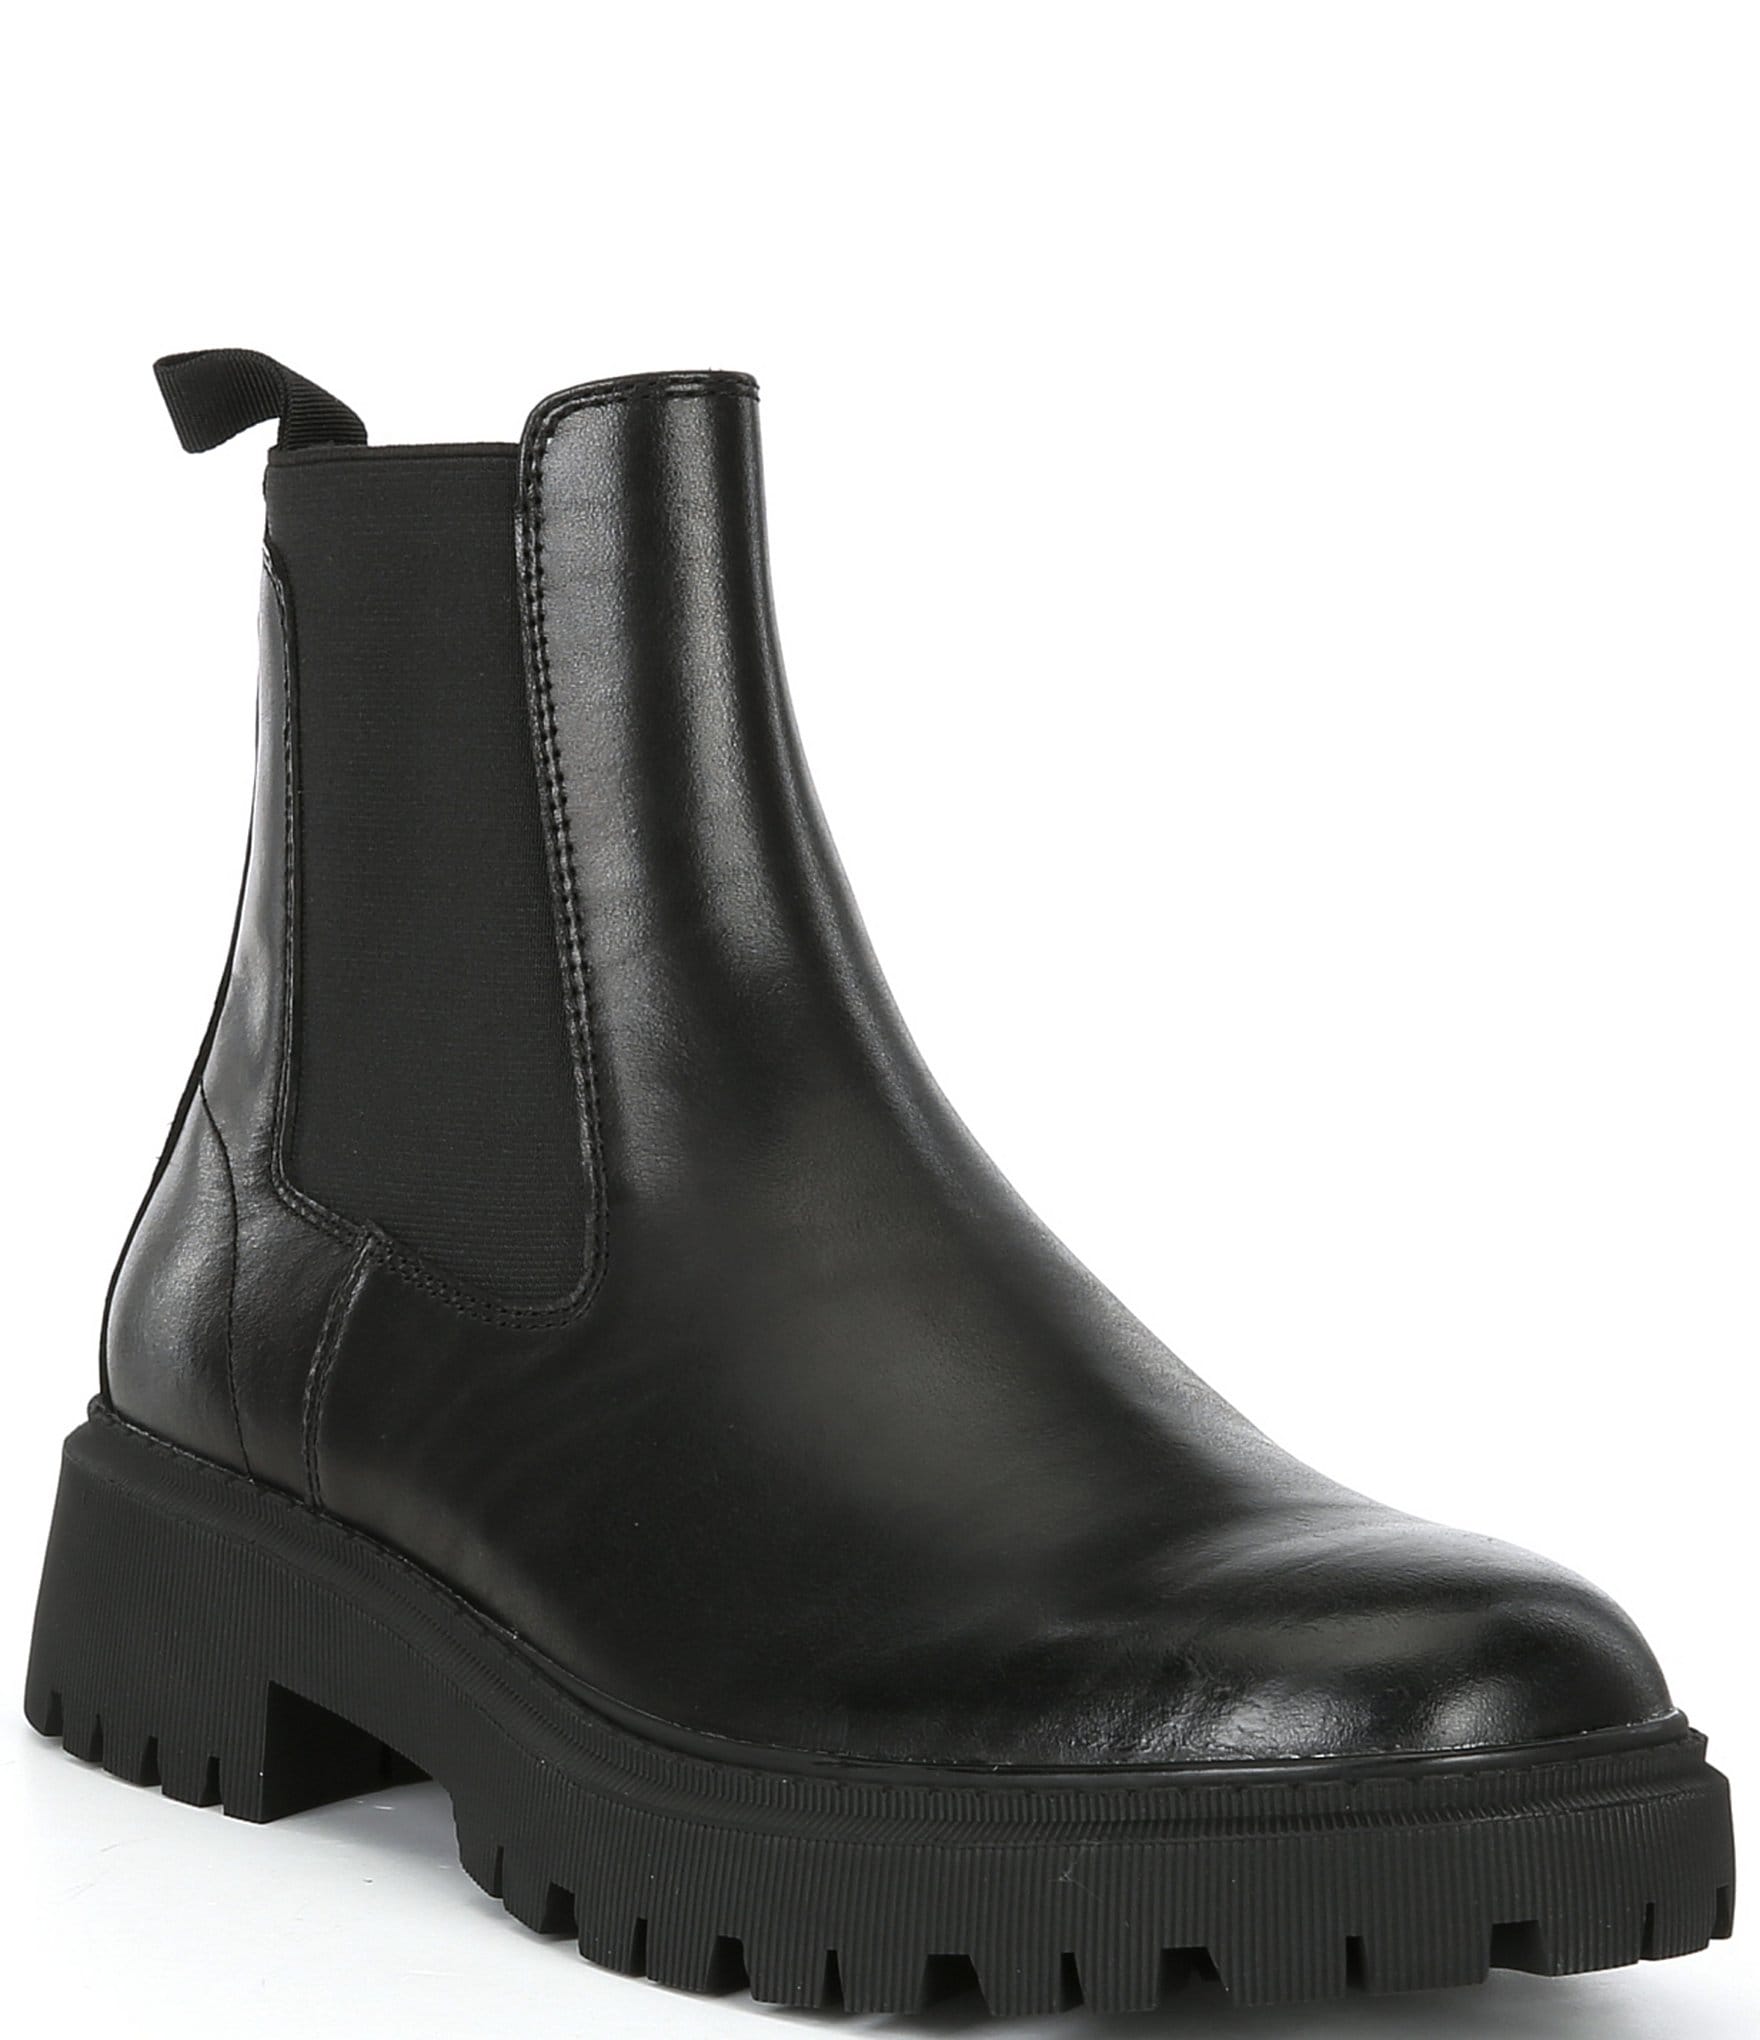 Kurt Geiger London Men's Ryder Chelsea Leather Boots | Dillard's